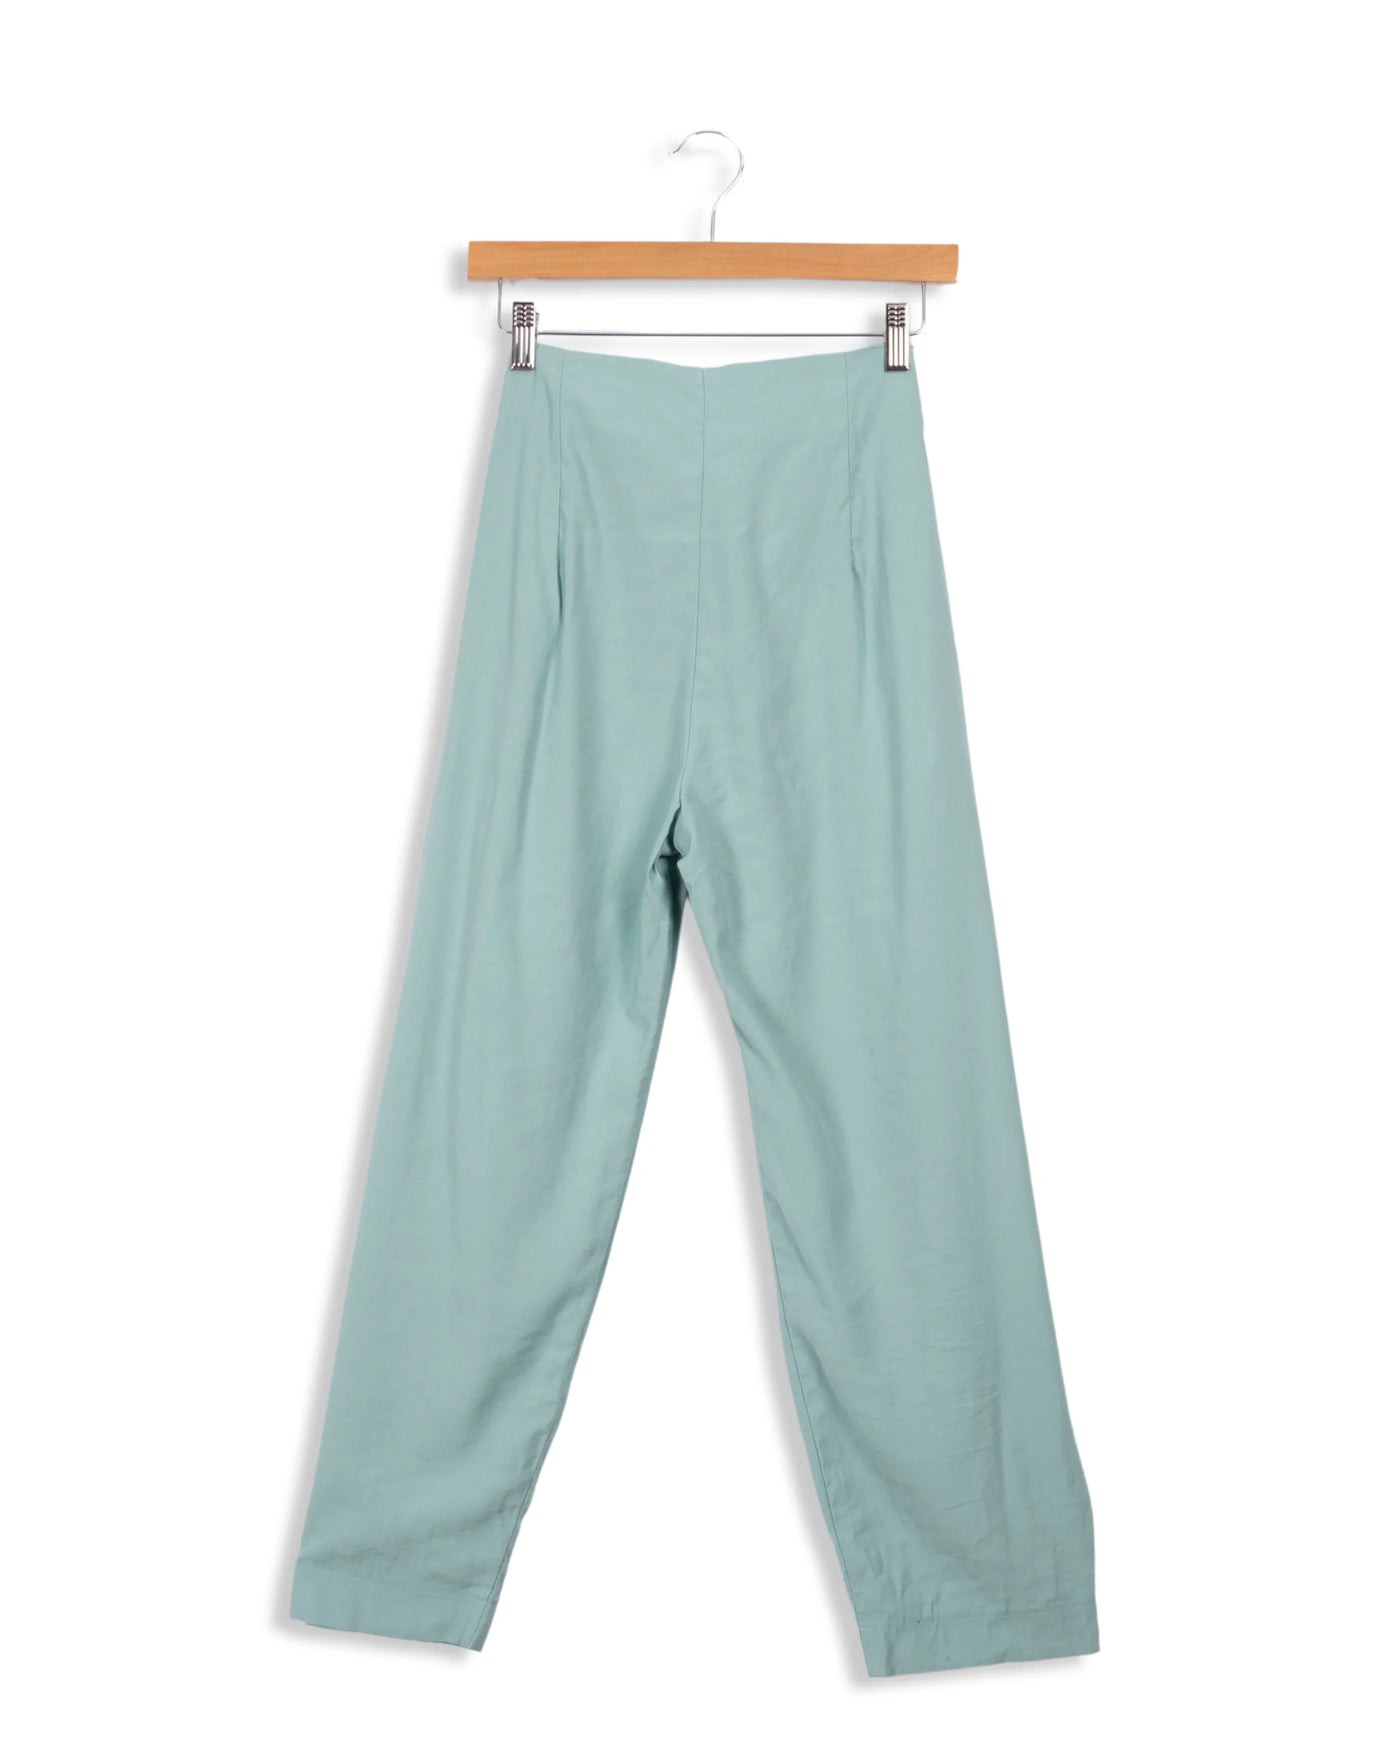 Pantalon bleu - La Fée Maraboutée - 40